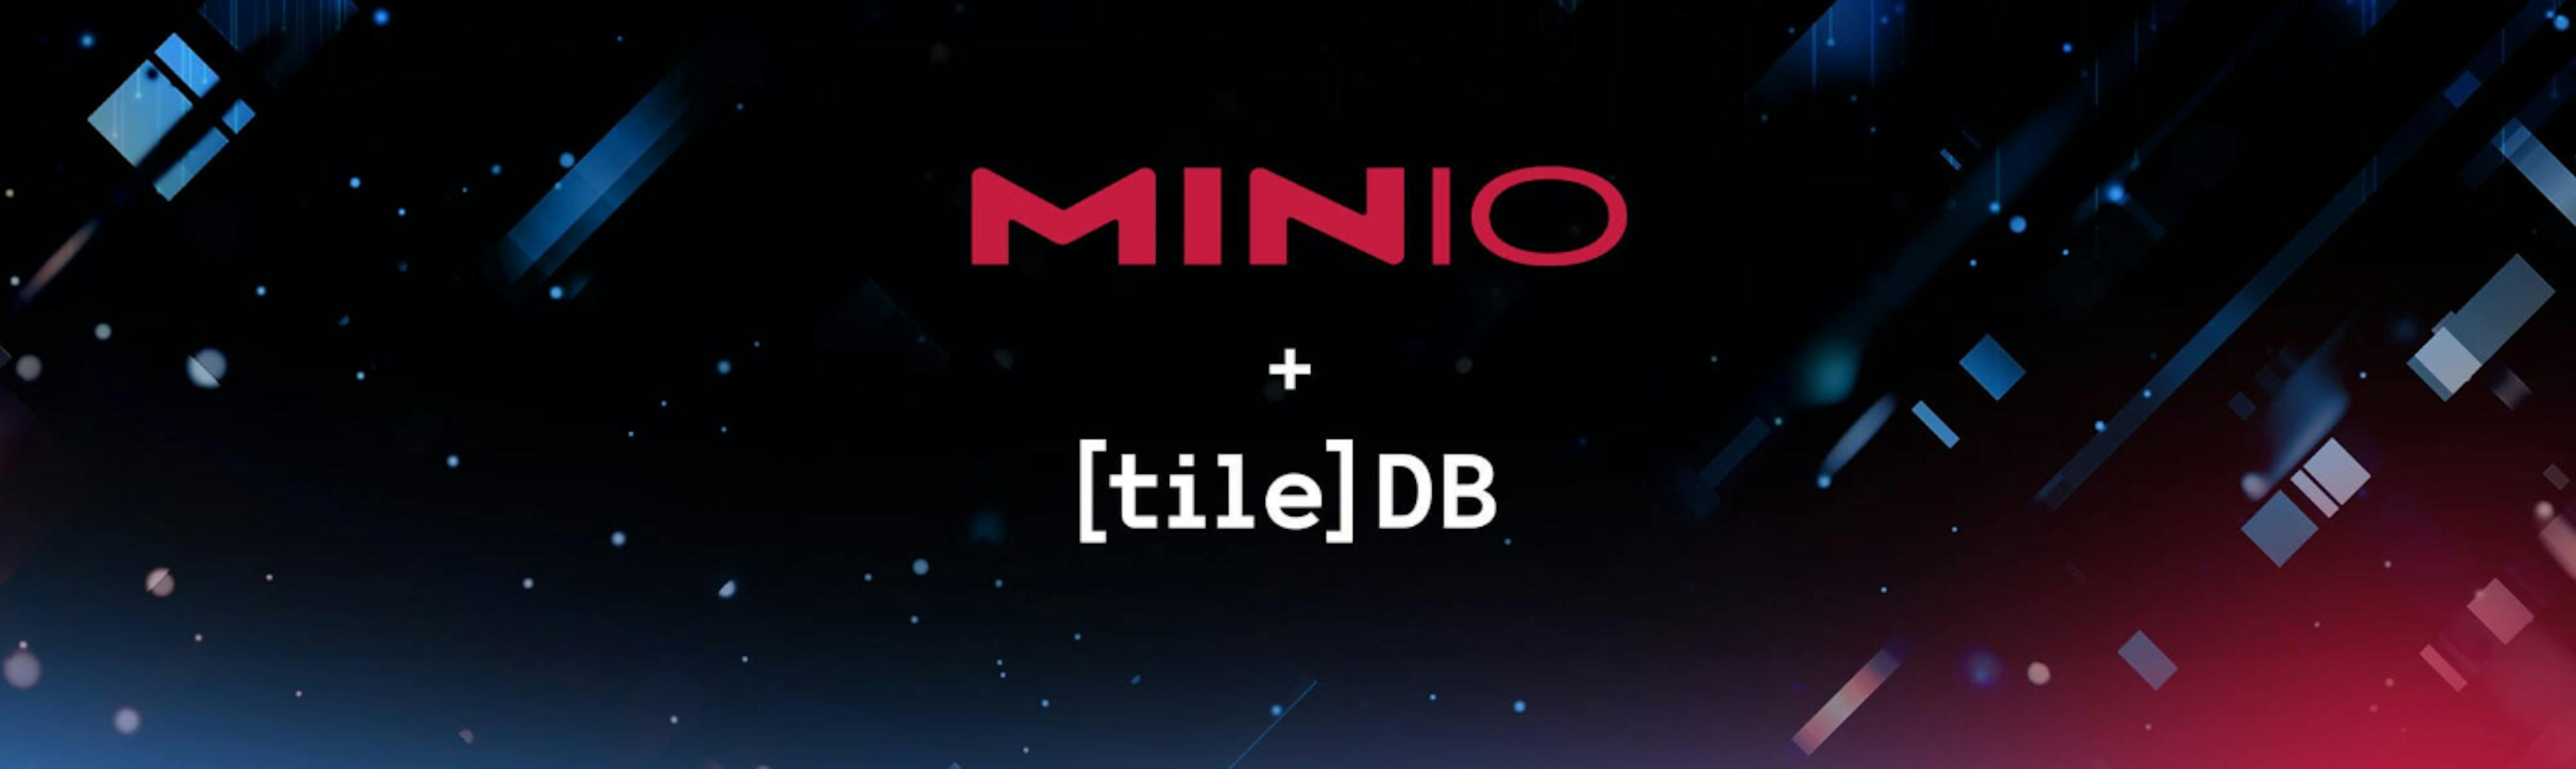 /vi/động-cơ-Tiledb-tăng-áp-với-minio feature image